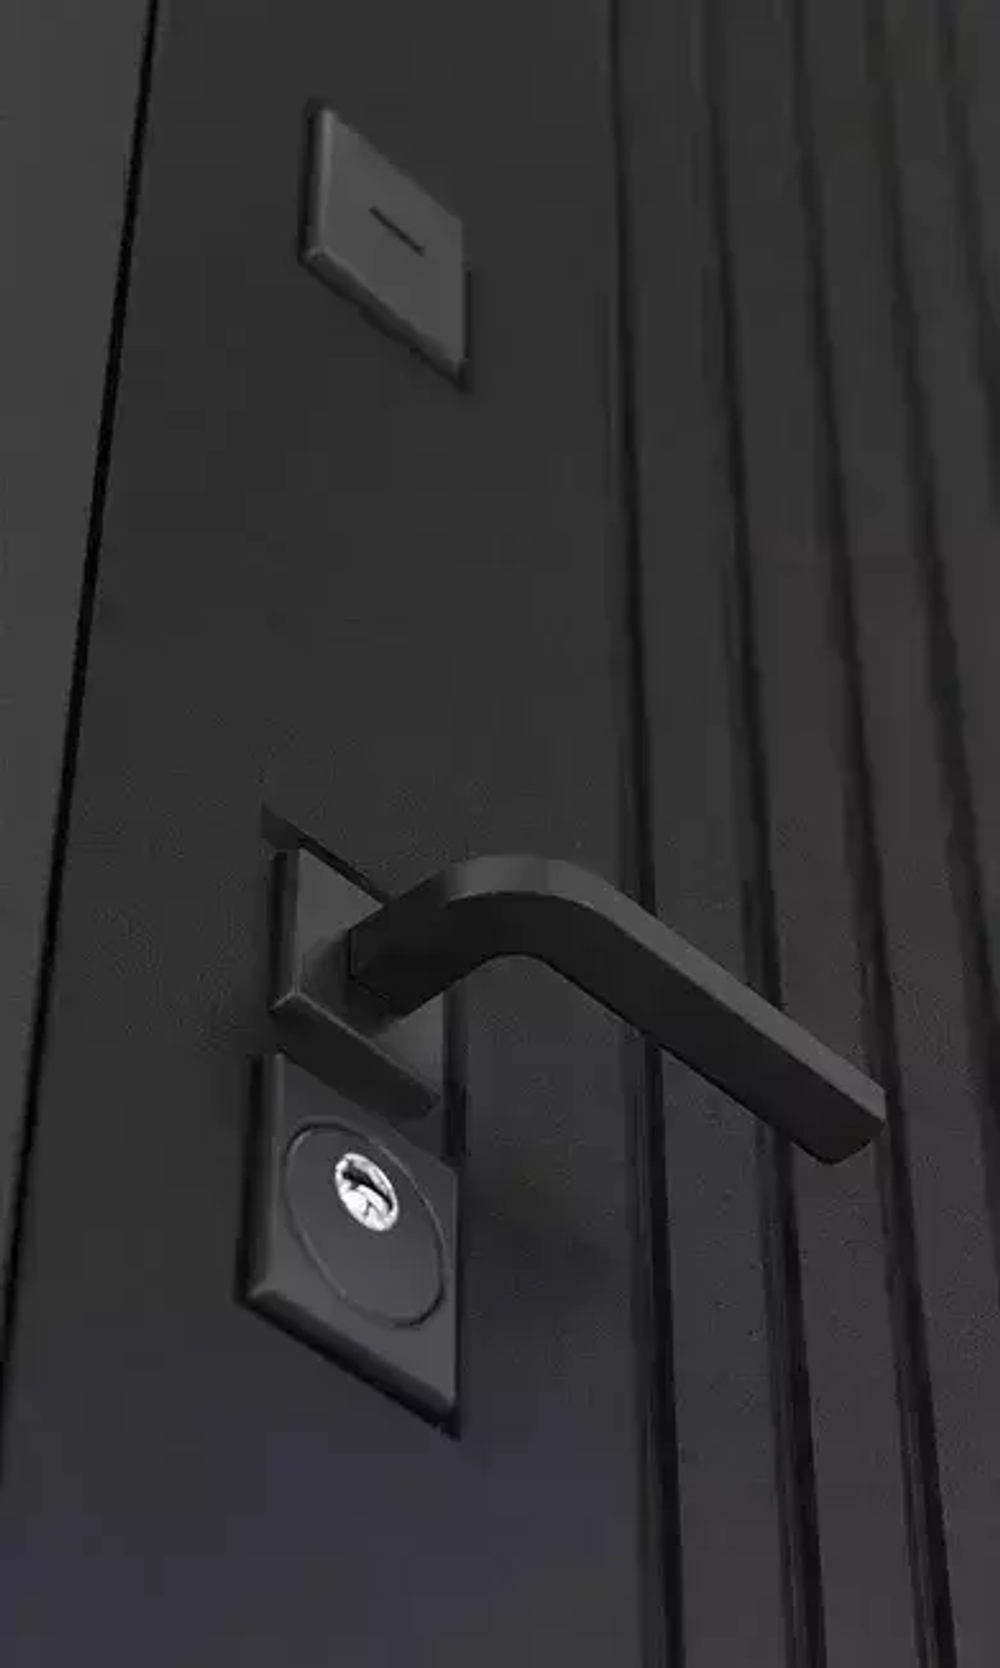 Входная металлическая дверь Бункер HIT Хит B-06 черный кварц / ФЛ-711 Капучино 853-2 (бежевый оттенок, без текстуры)